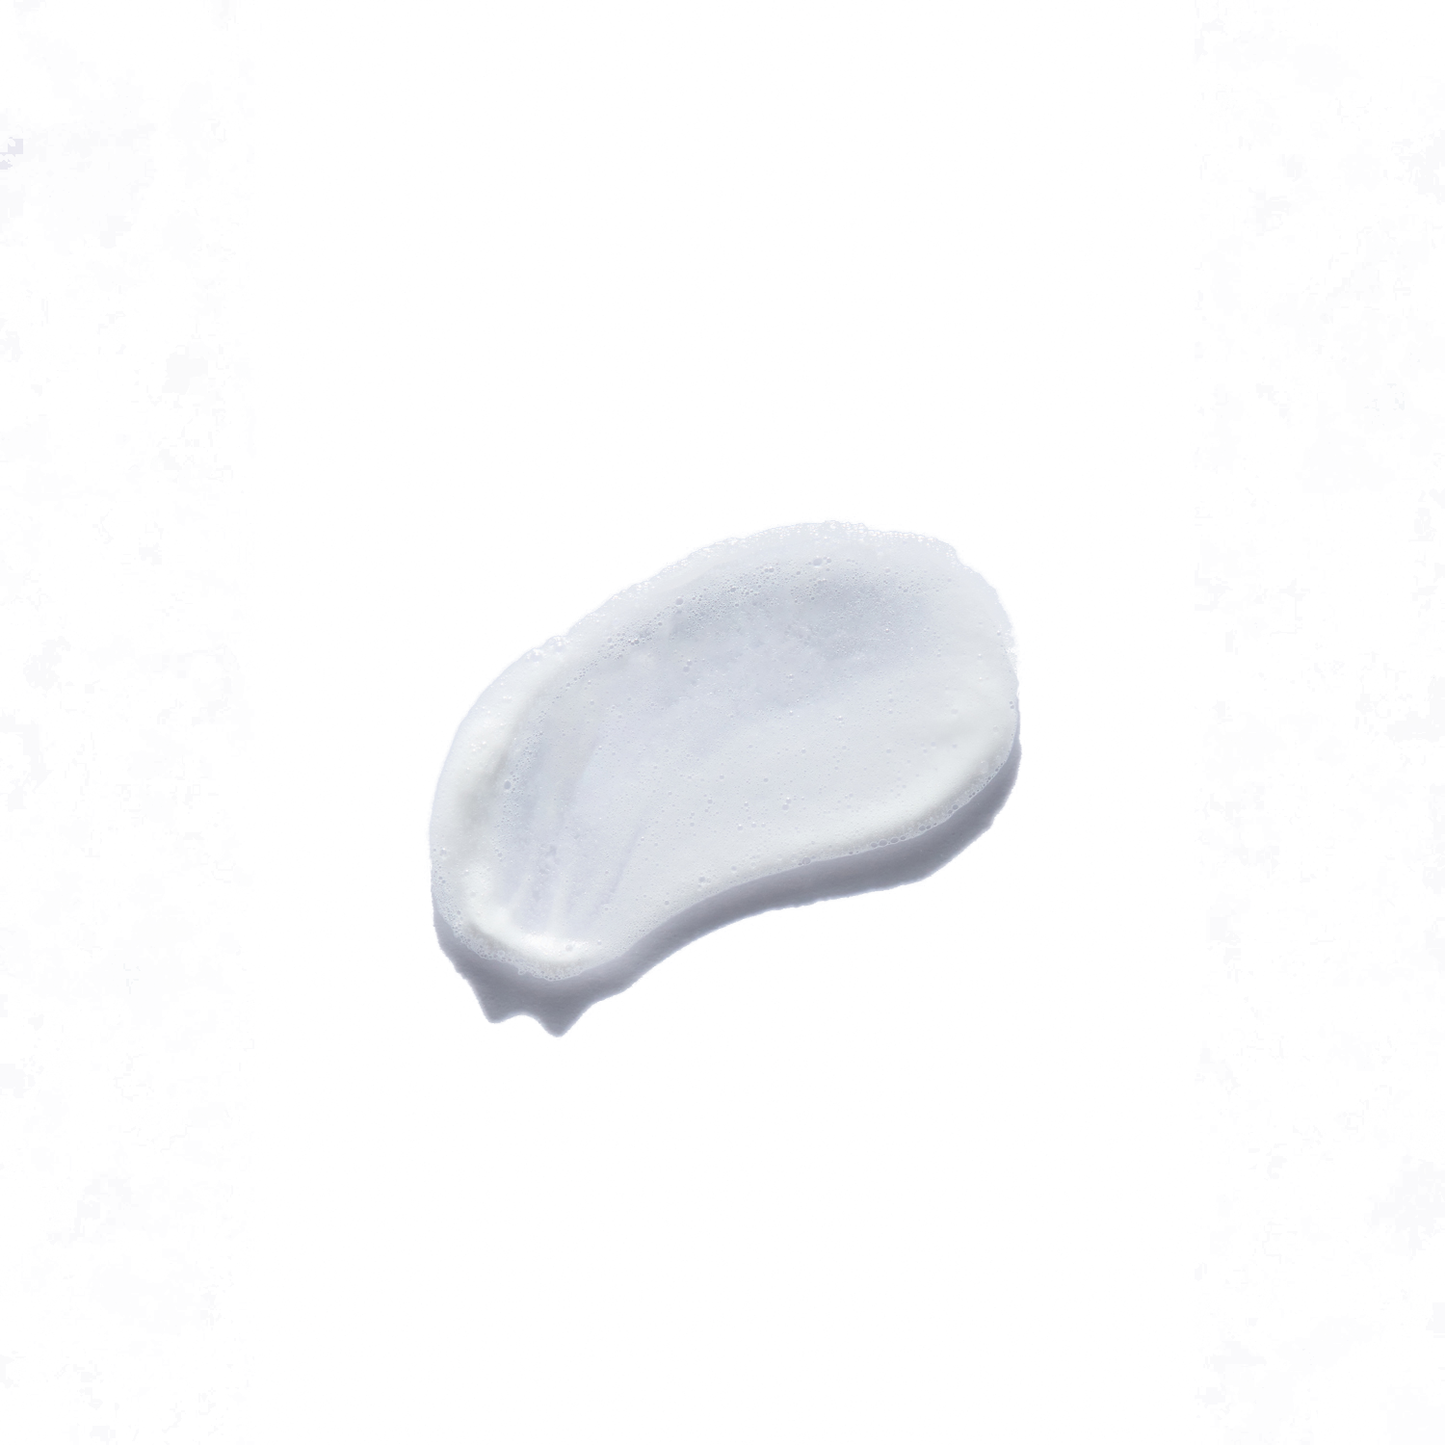 AZELANE Clinical Whitening Soap 100g